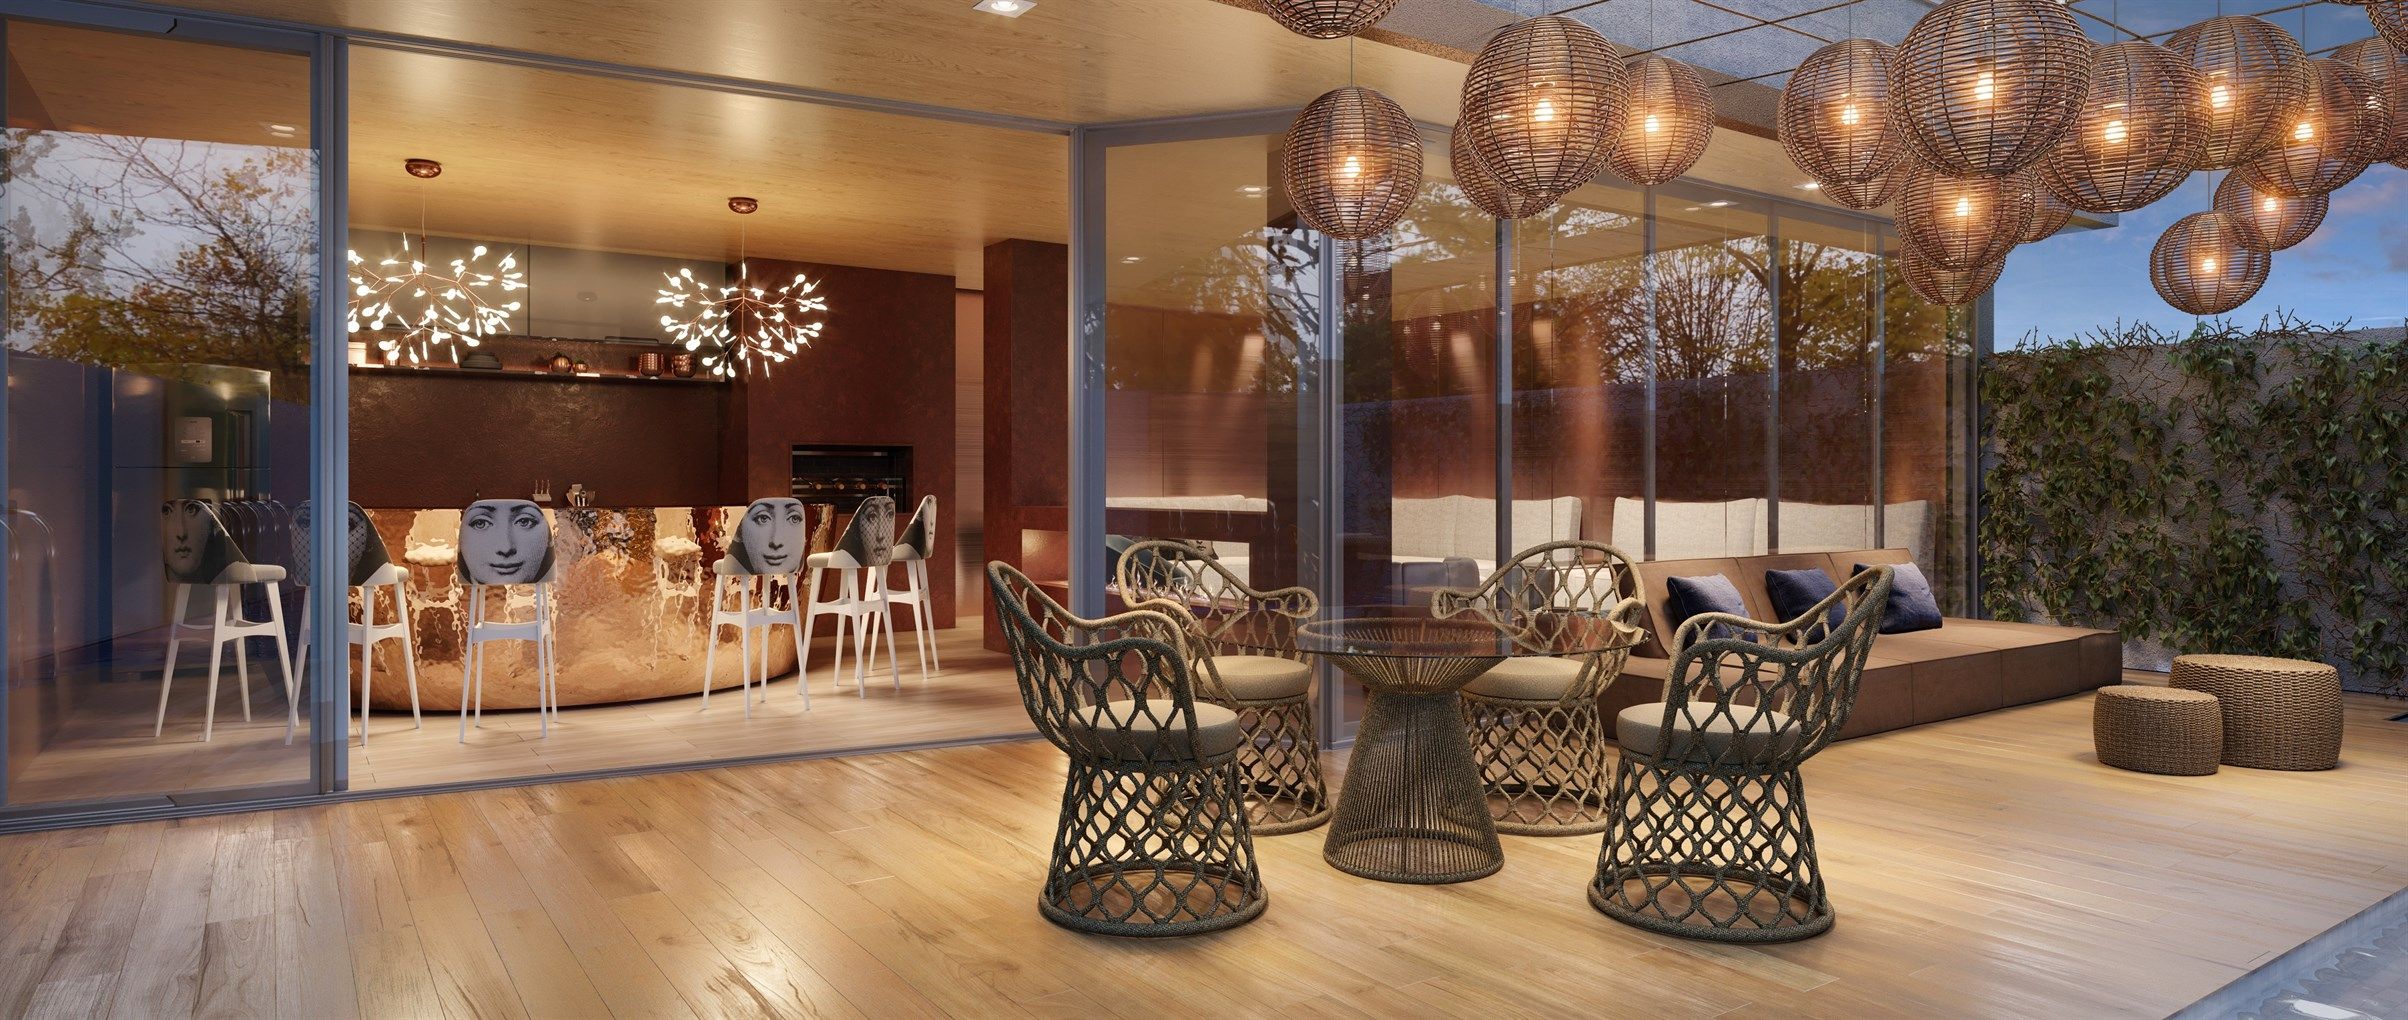 espaço gourmet com banquetas altas desenvolvidas pelo Studio YOO. Na área externa, as cadeiras com tramas e as mesas também possuem um design diferenciado.